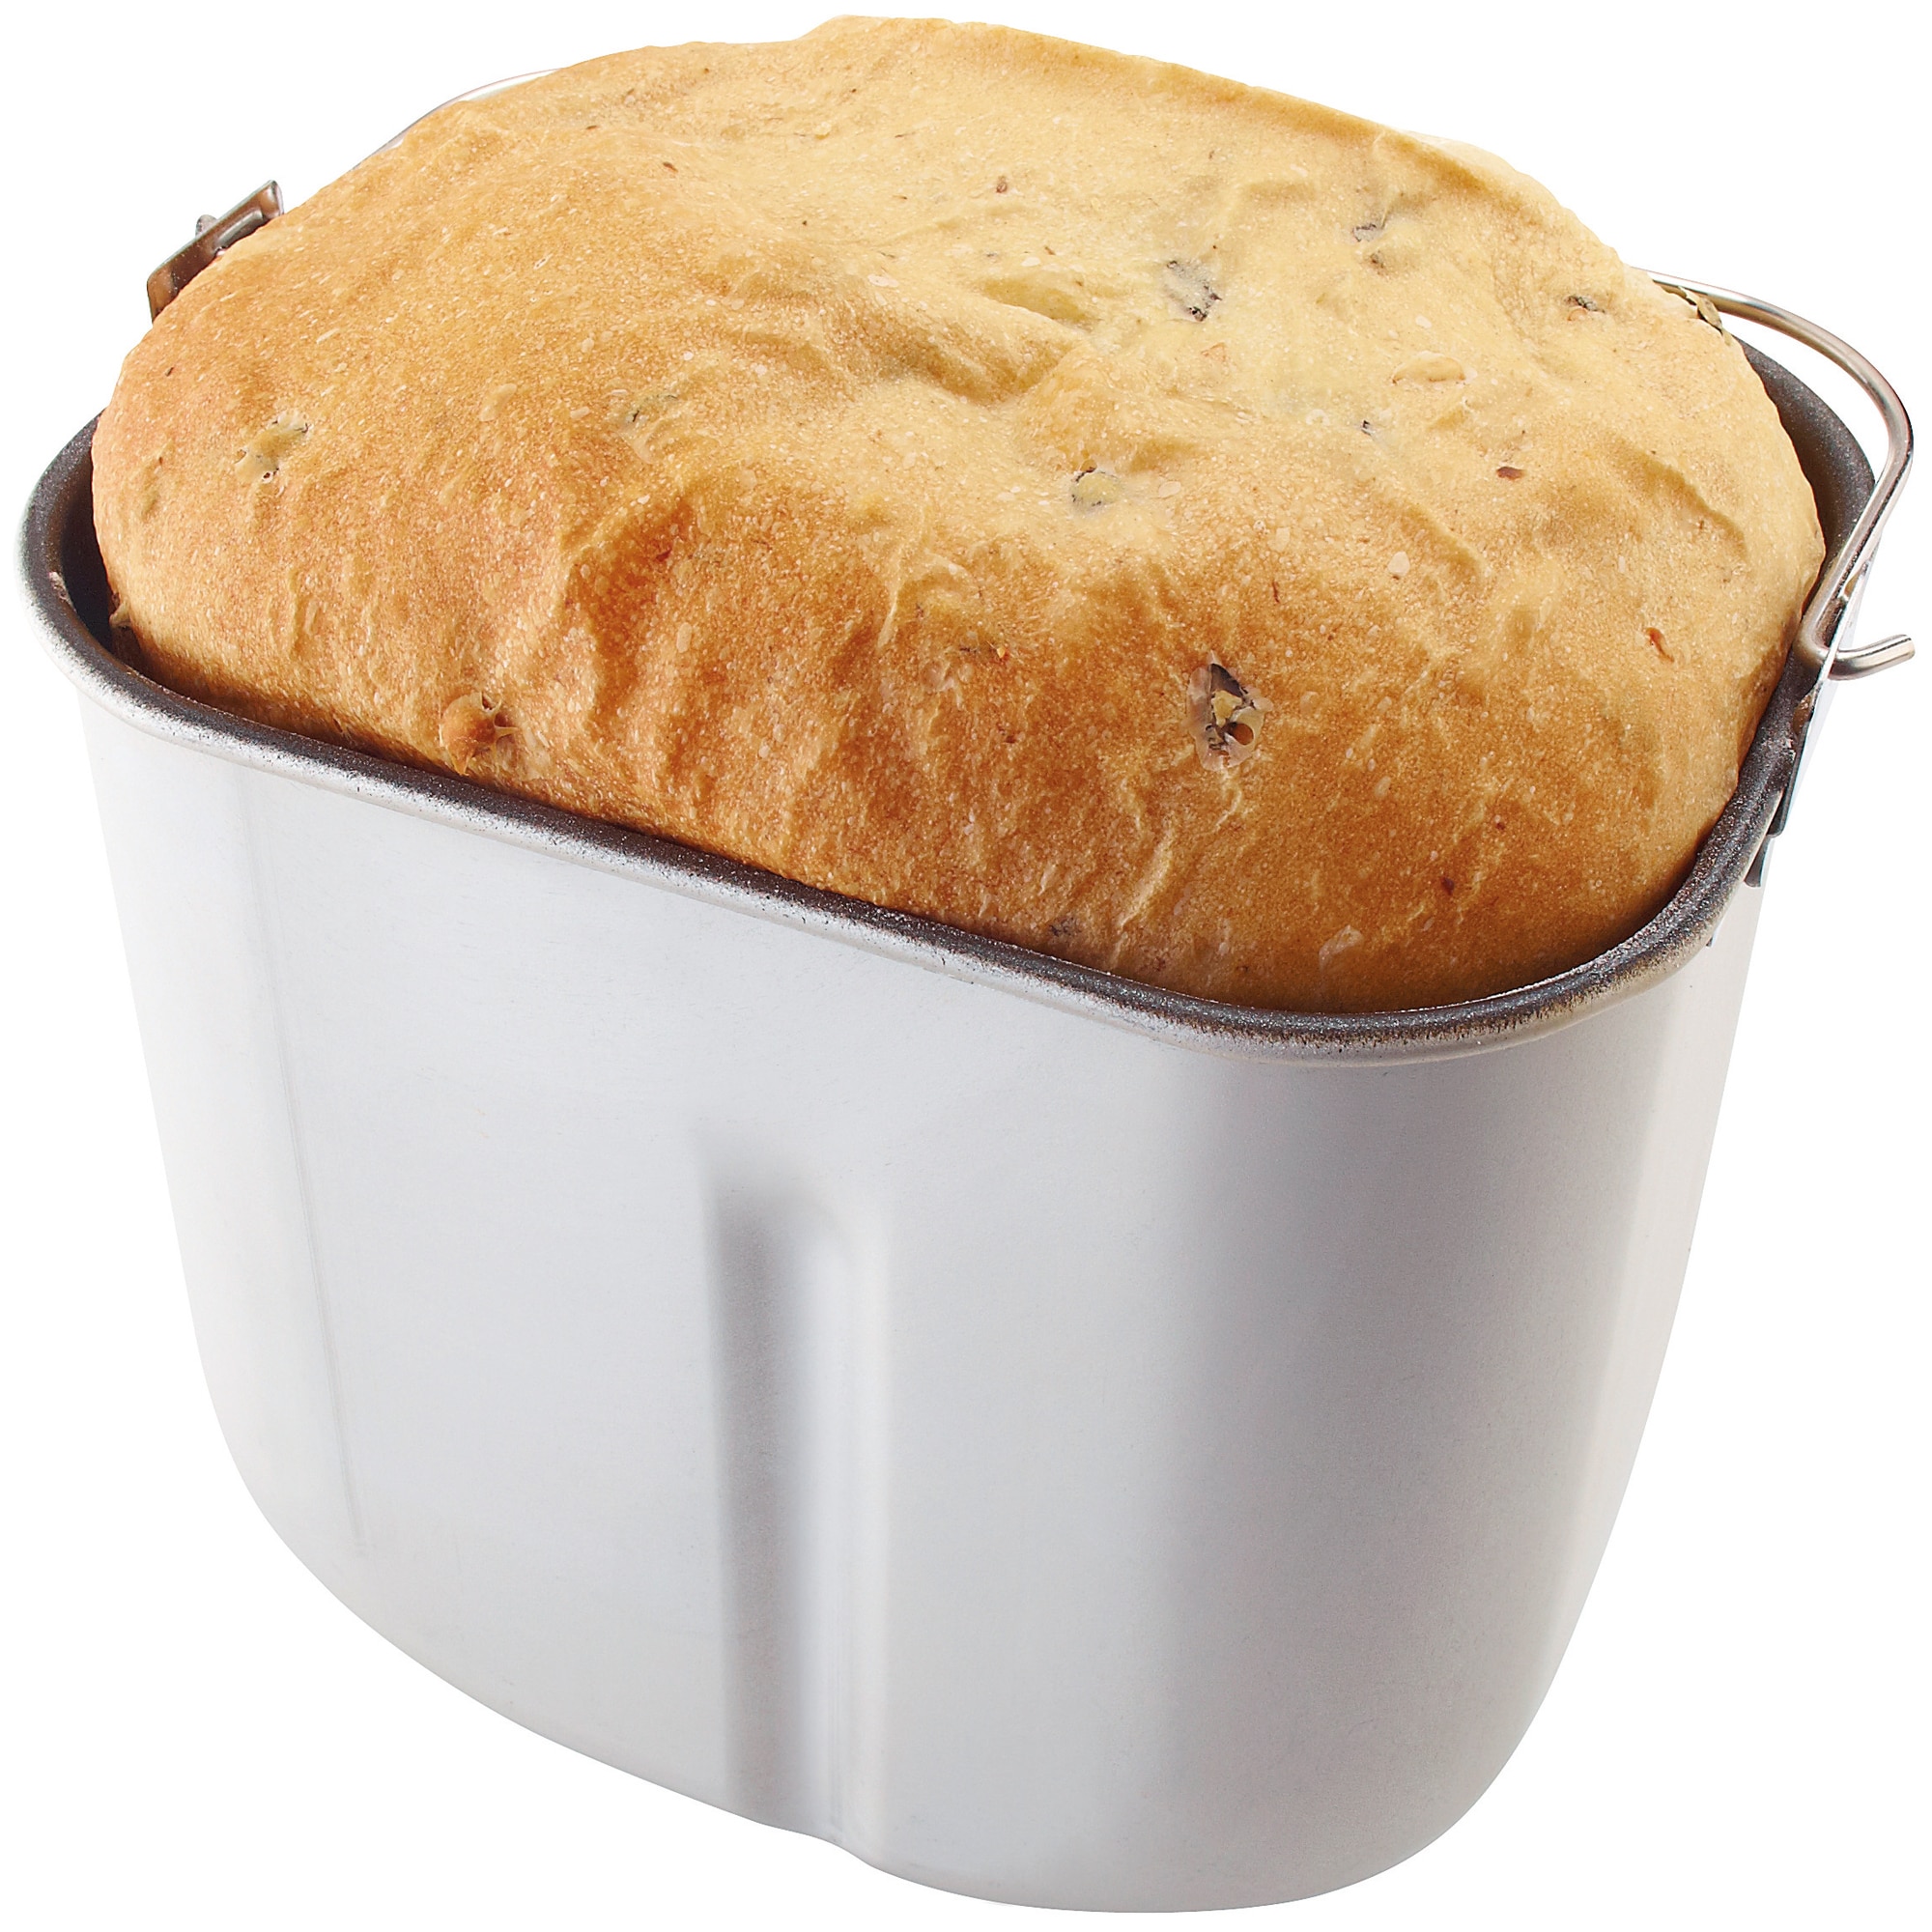 Смесь для хлебопечки купить. Gorenje bm1200bk. Хлебопечка горение. Современная хлебопечка. Хлебопечка Горенье выпечка.